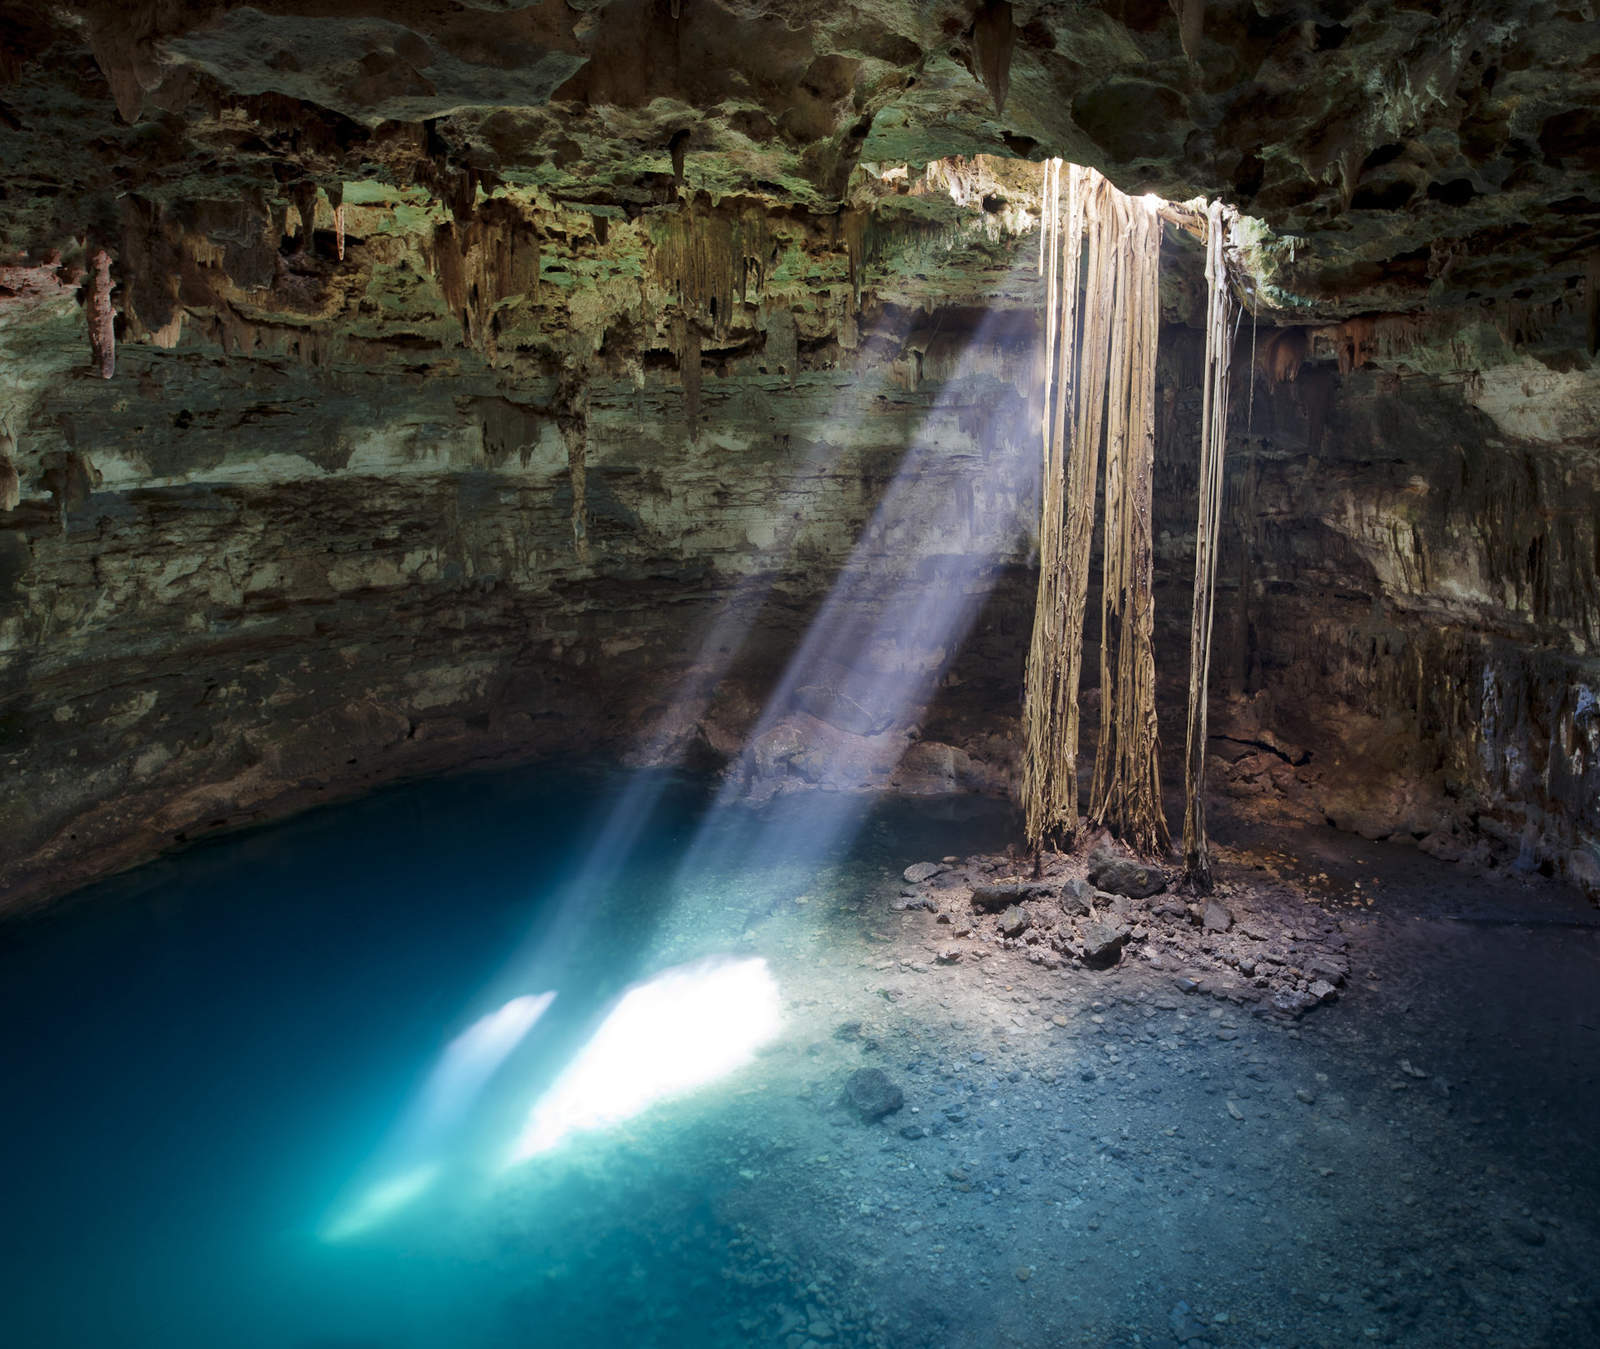 El proyecto de Tren Maya se enfrenta a otro obstáculo para su desarrollo: las características geológicas de los suelos de la península de Yucatán, que guardan en sus entrañas miles de kilómetros de sistemas de cuevas, galerías y cenotes. (EFE)